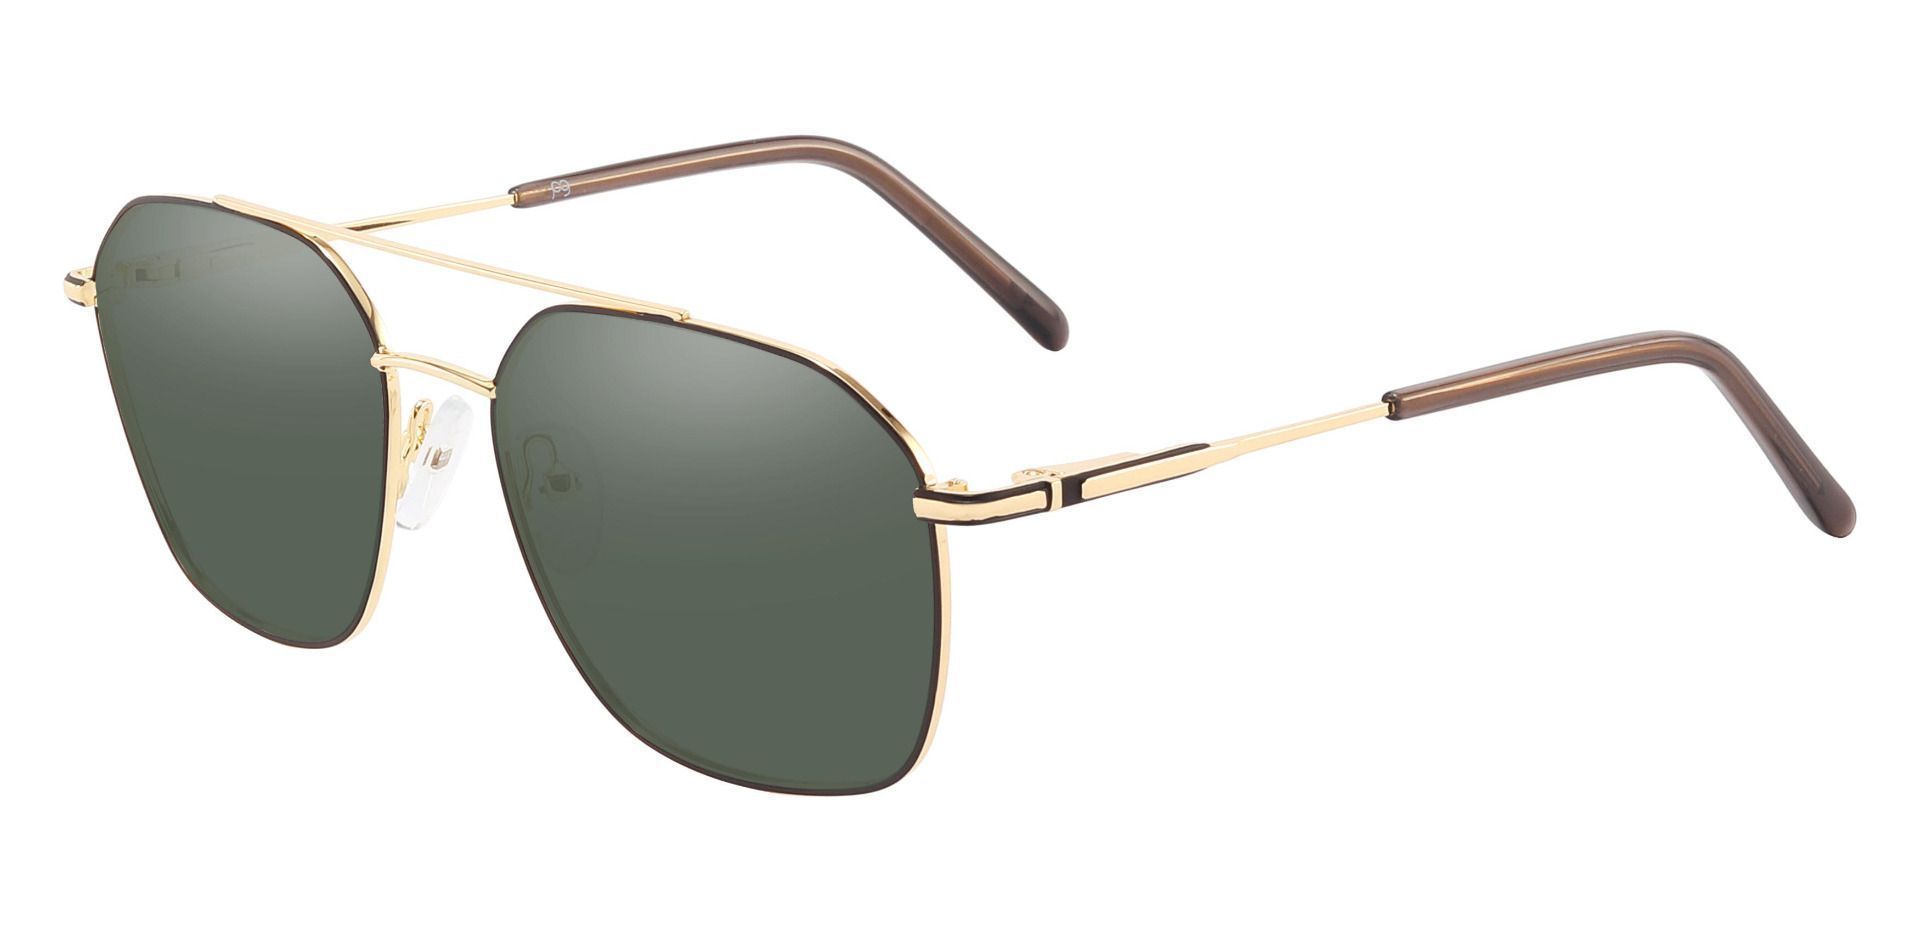 Harvey Aviator Reading Sunglasses - Gold Frame With Green Lenses